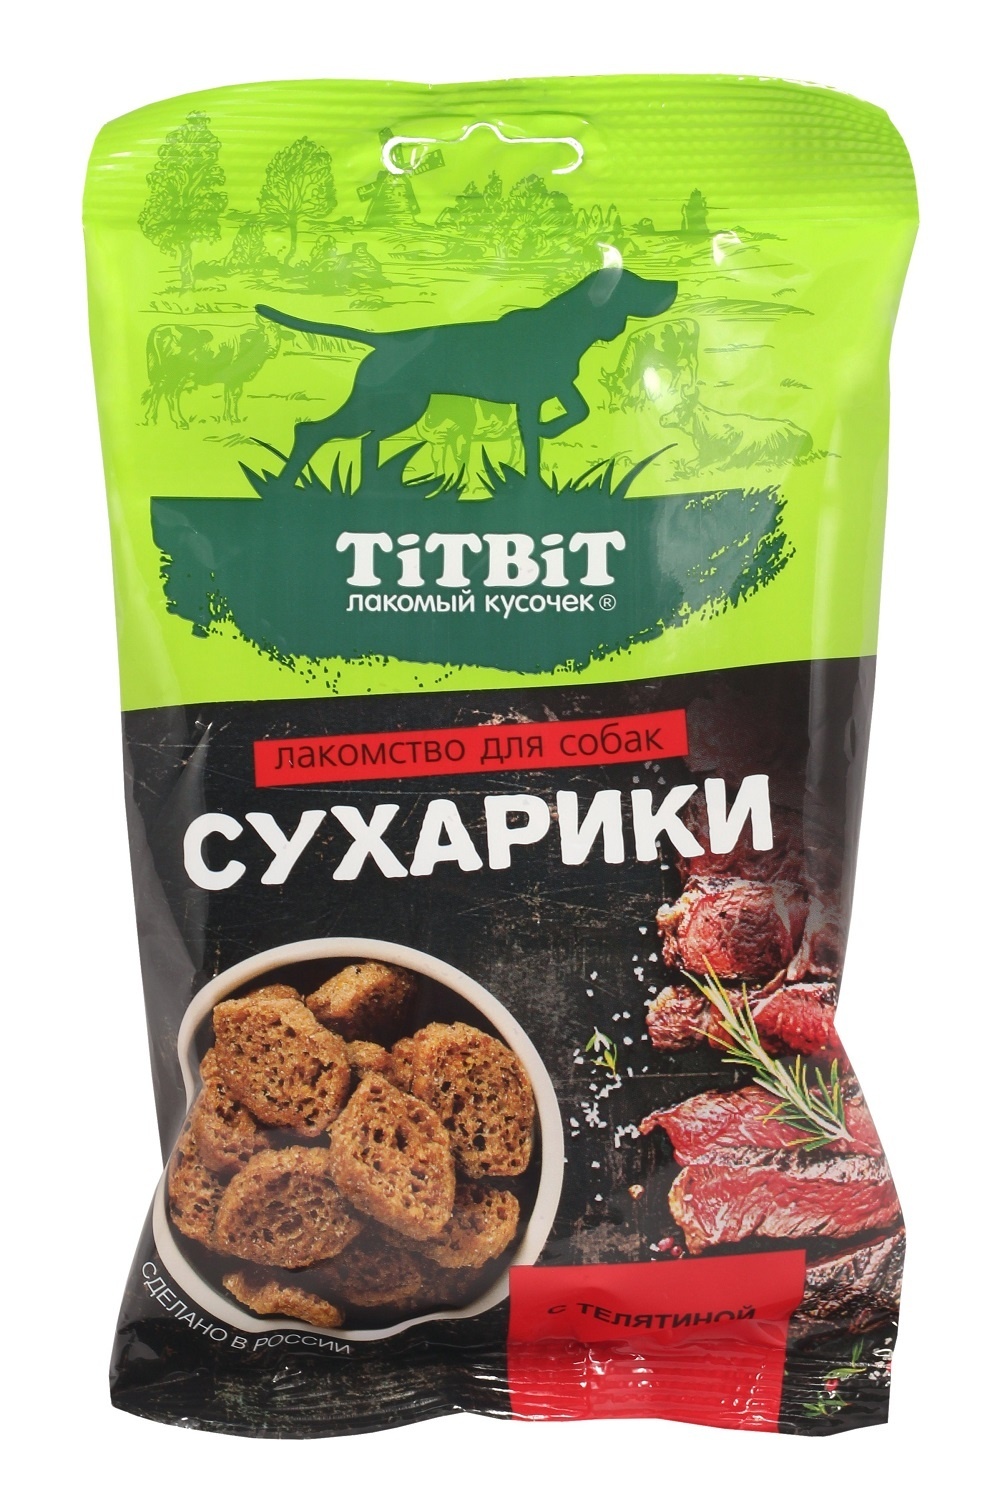 TiTBiT TiTBiT сухарики с телятиной, лакомство для собак (55 г)